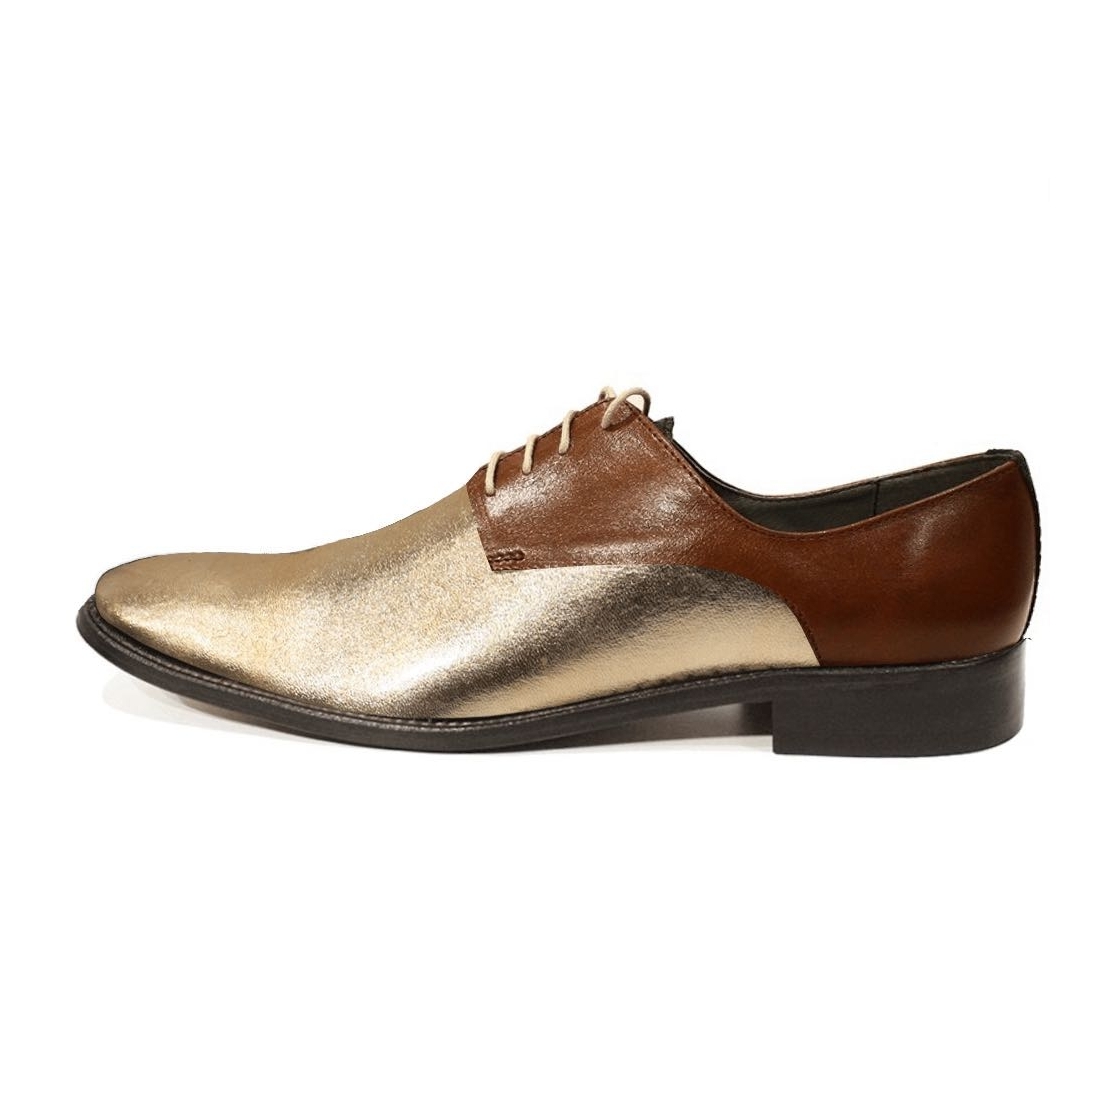 Modello Ronedorra - Scarpe Classiche - Handmade Colorful Italian Leather Shoes